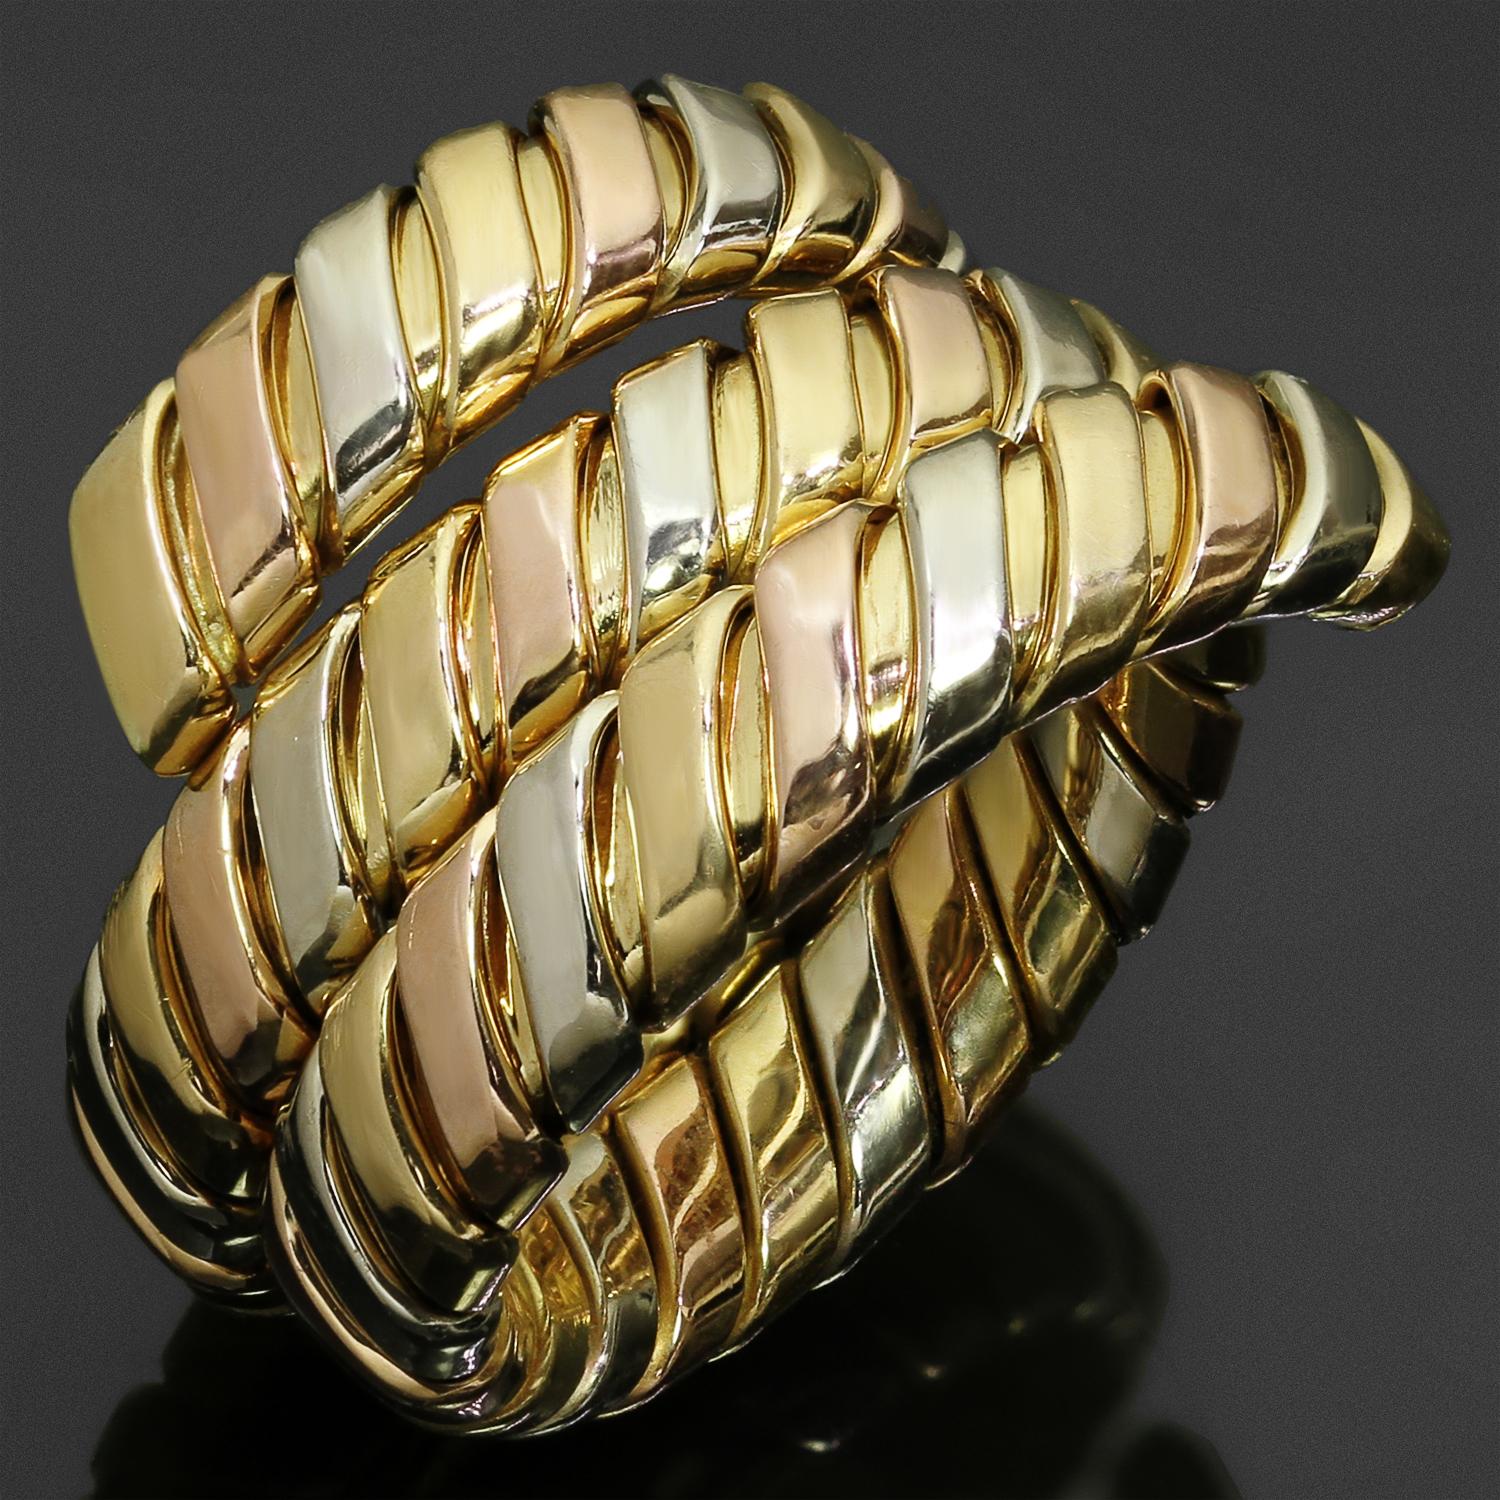 Dieser fabelhafte Bvlgari-Ring aus der klassischen Tubogas-Kollektion zeichnet sich durch ein leicht verstellbares Wickeldesign aus, das in 18 Karat Gelb-, Weiß- und Roségold gefertigt ist. Hergestellt in Italien in den 1990er Jahren. Die Ringgröße